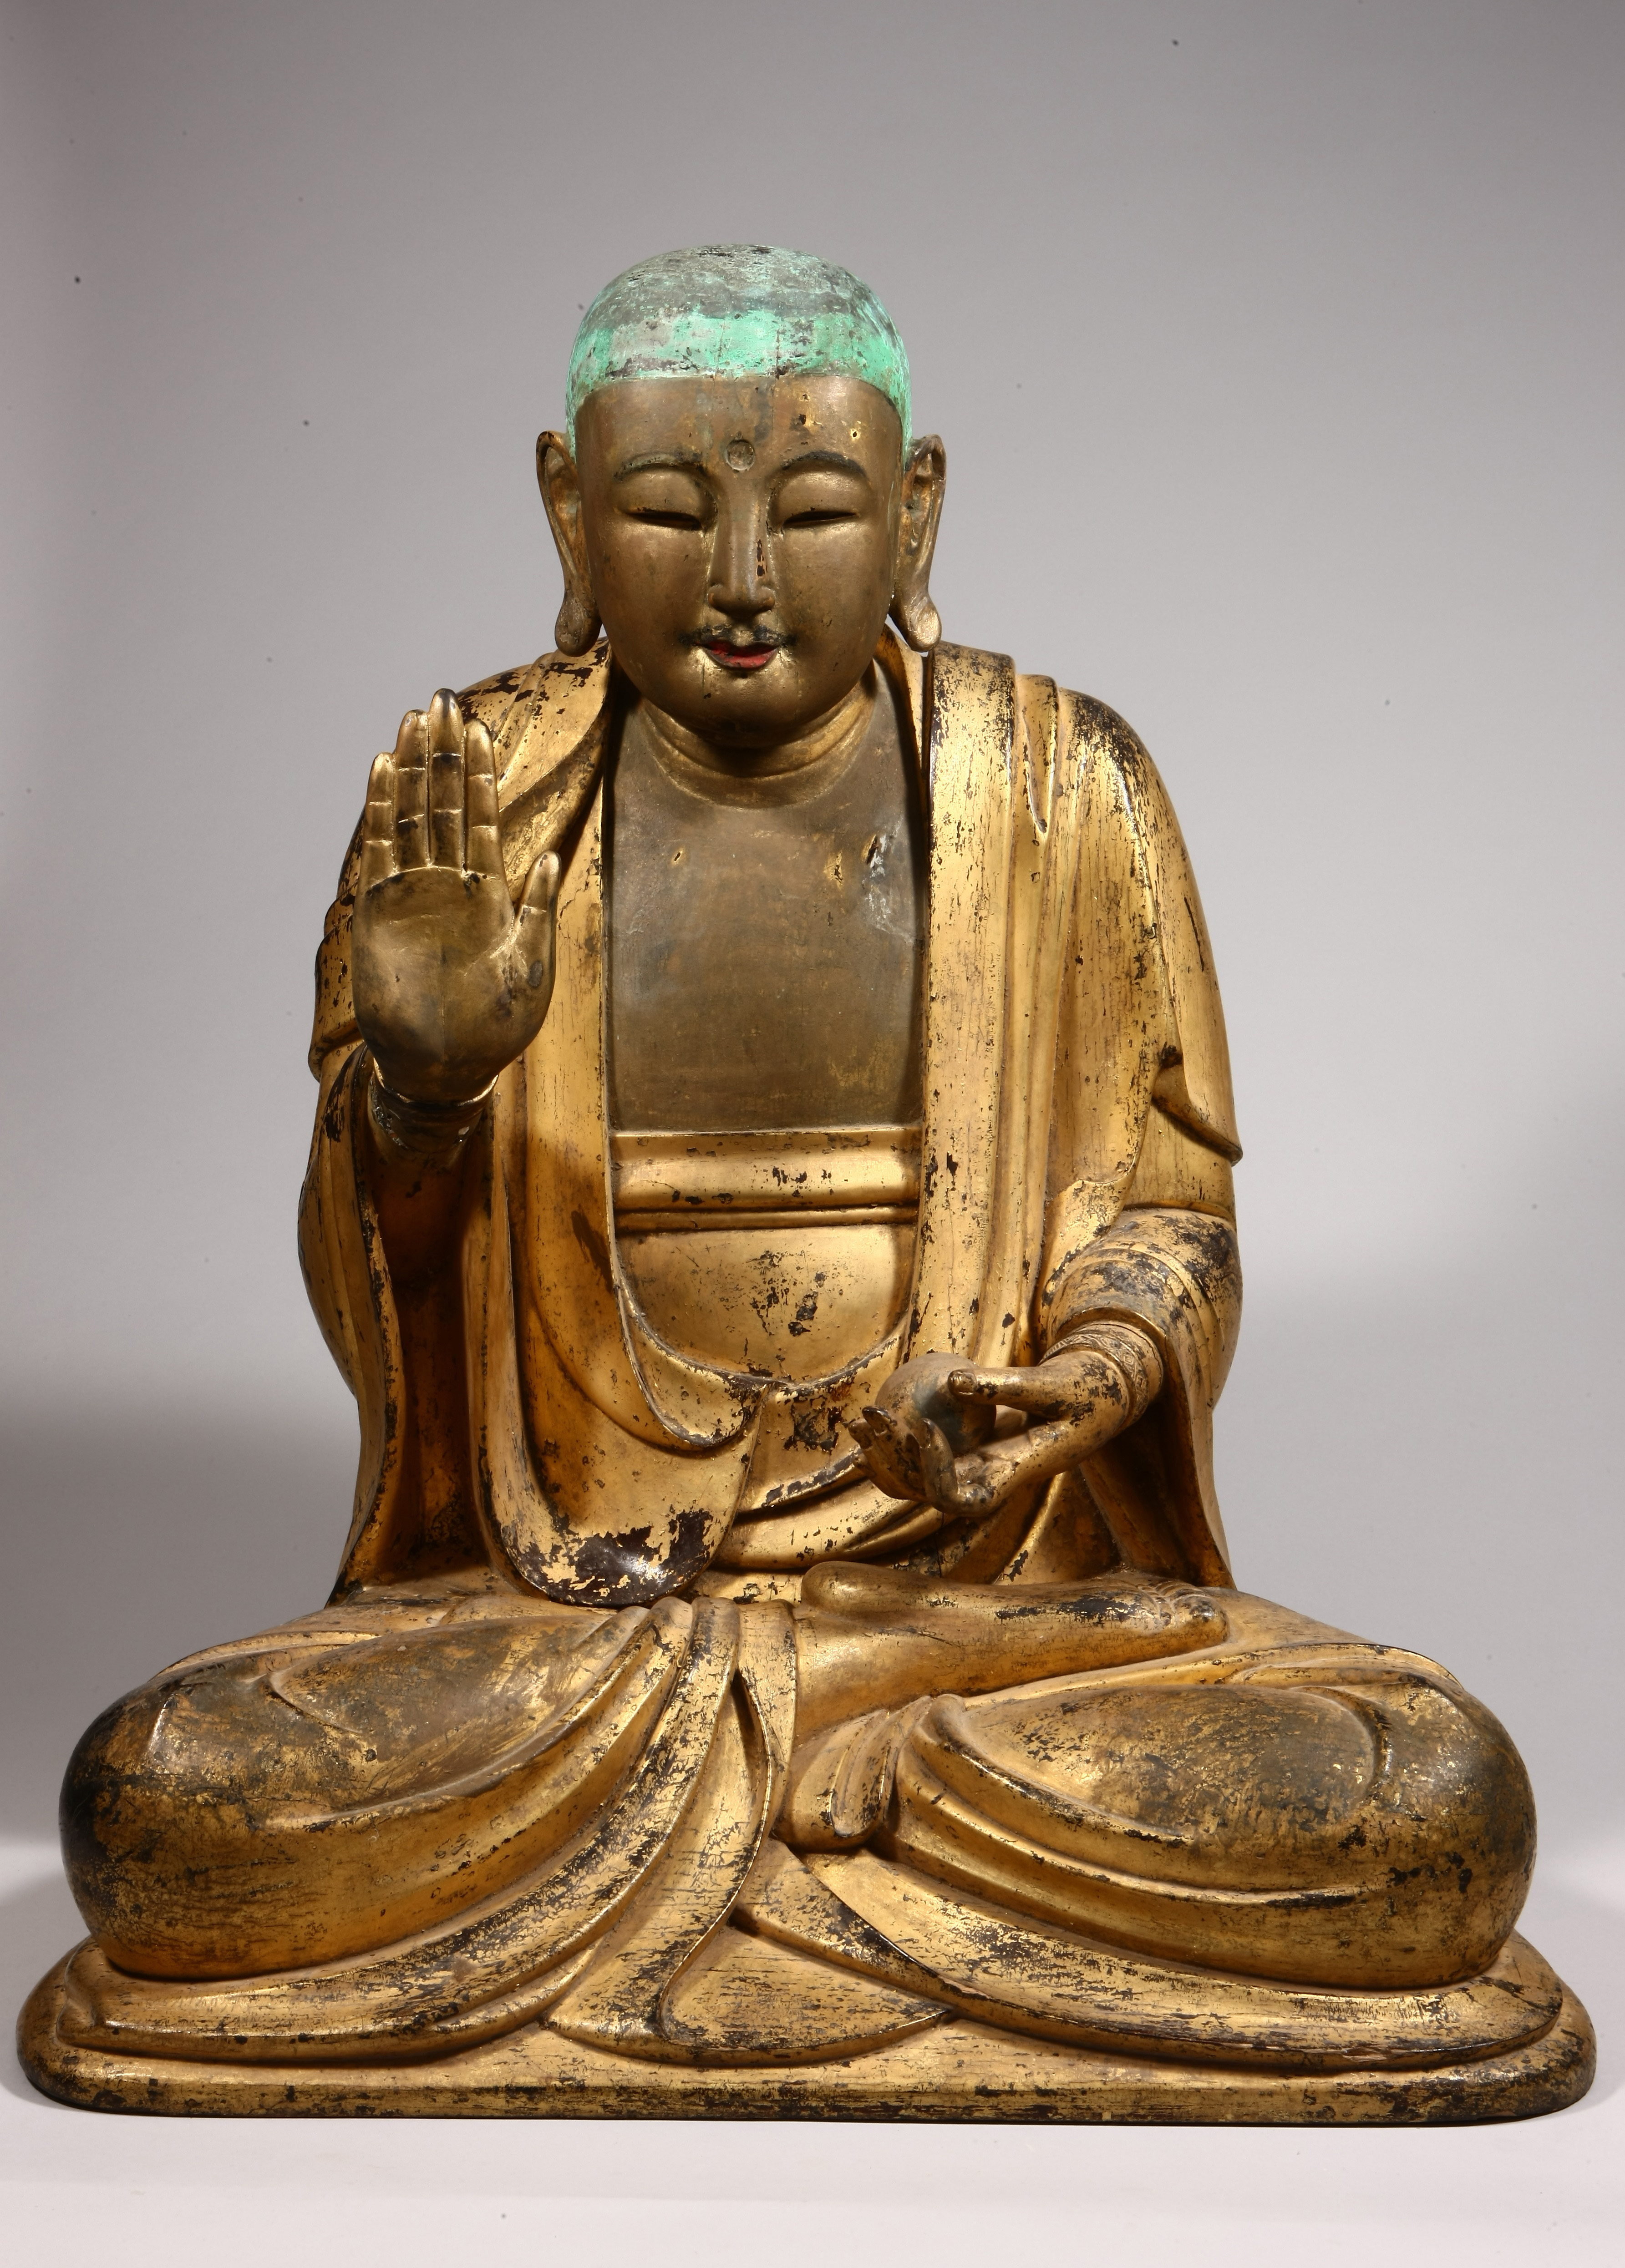 목조지장보살좌상(木造地藏菩薩坐像)(제158호)